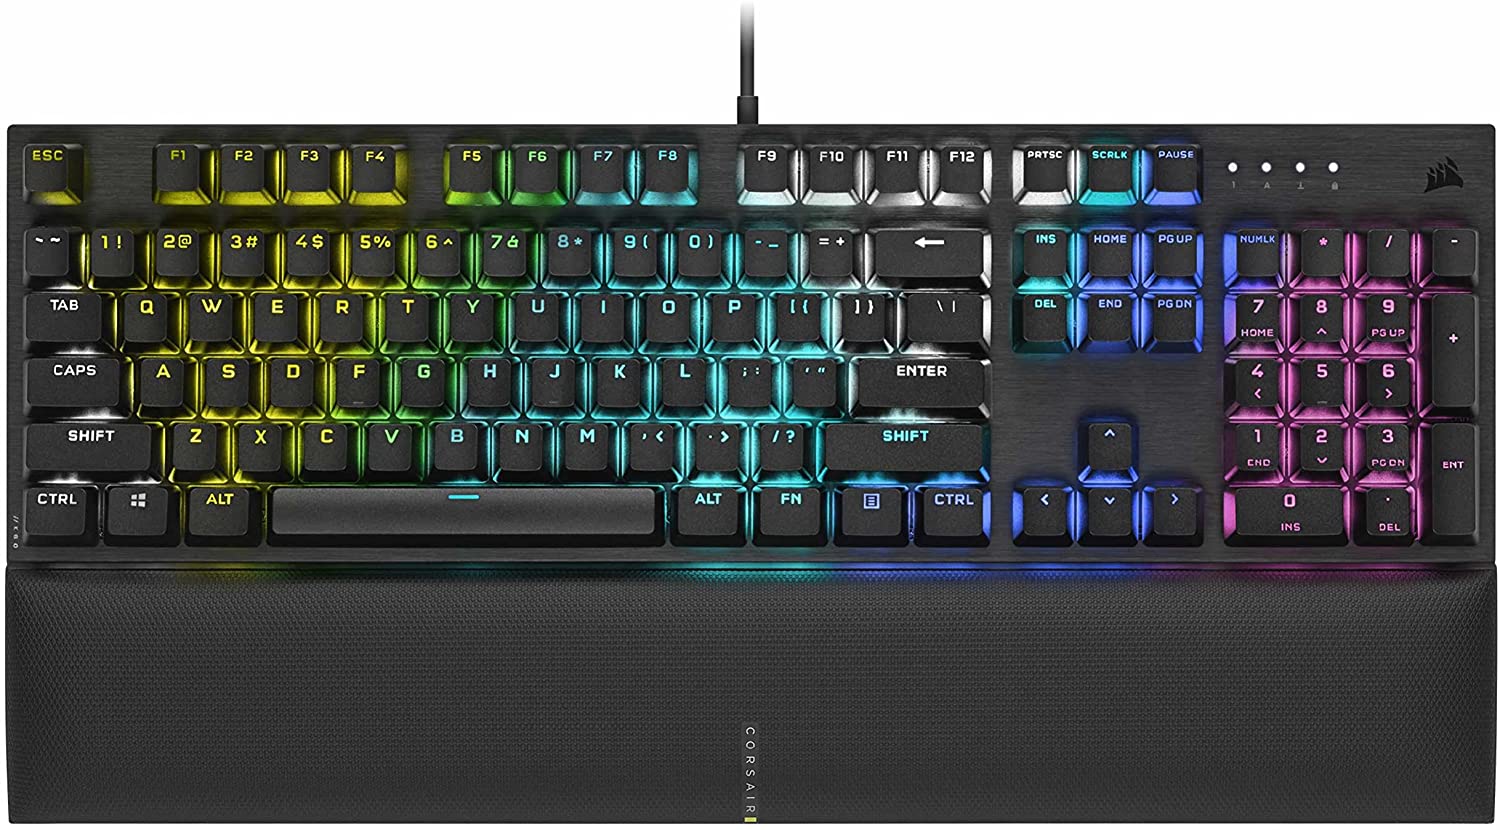 Best Gaming Keyboards Under 100 - Corsair K60 RGB Pro SE Mechanical Gaming Keyboard